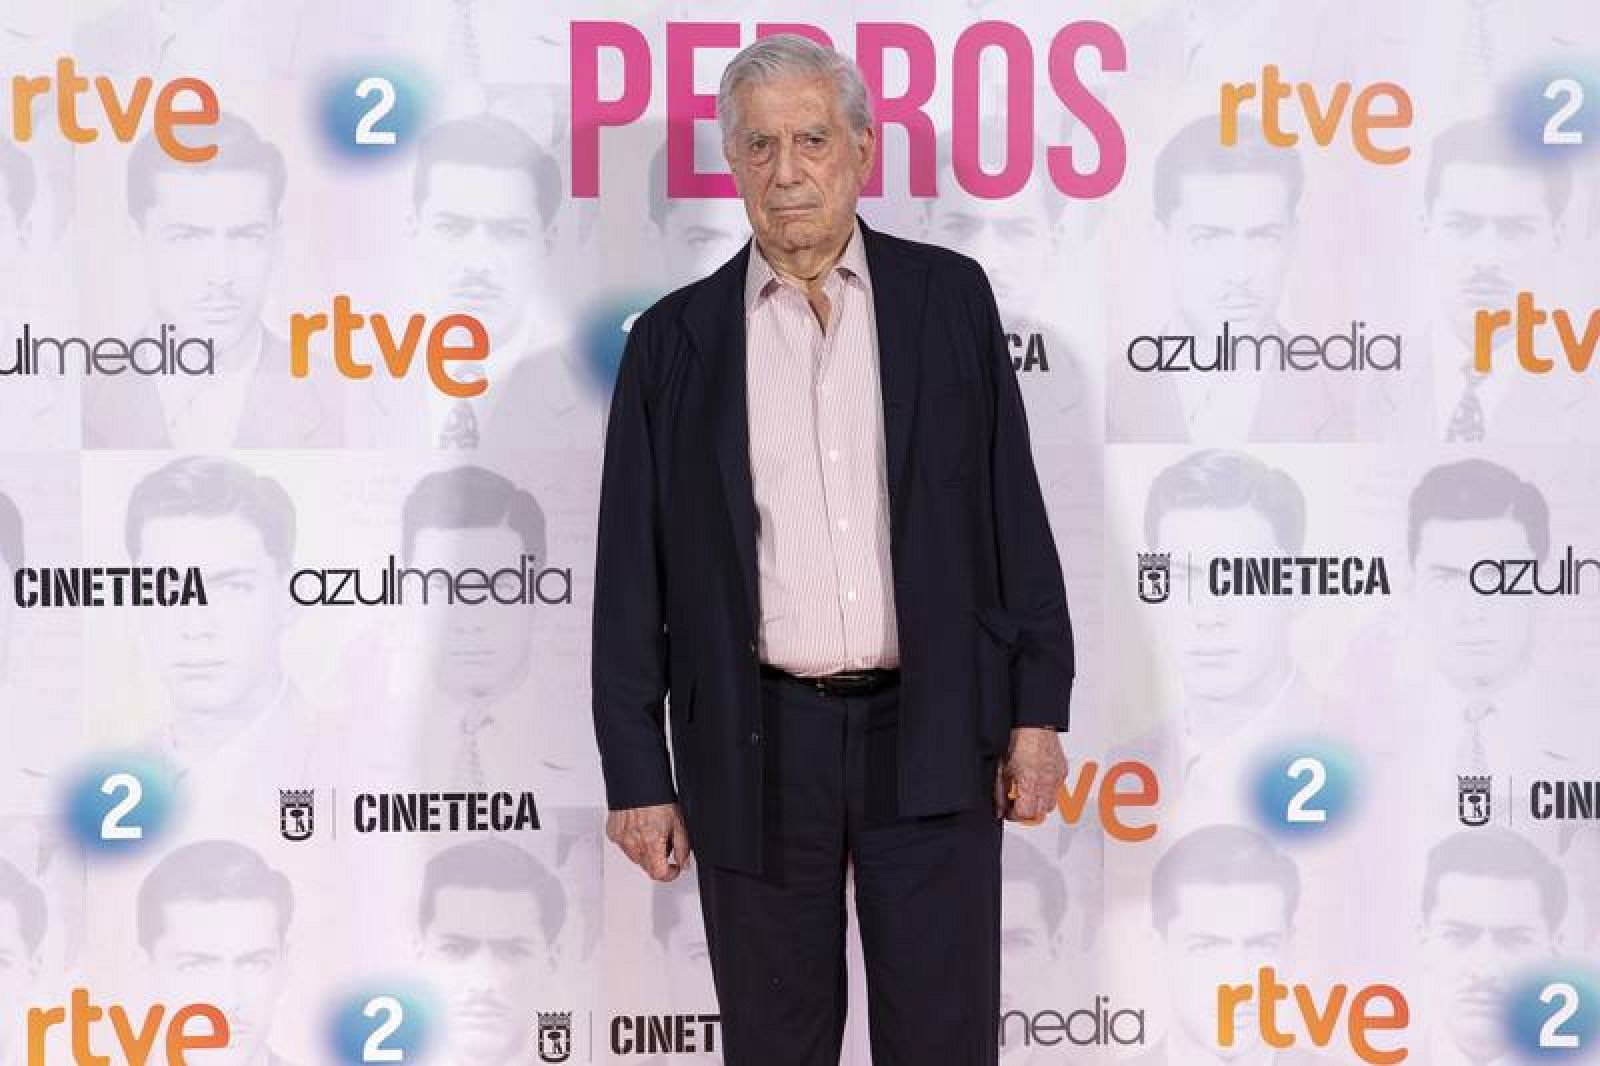  Mario Vargas Llosa